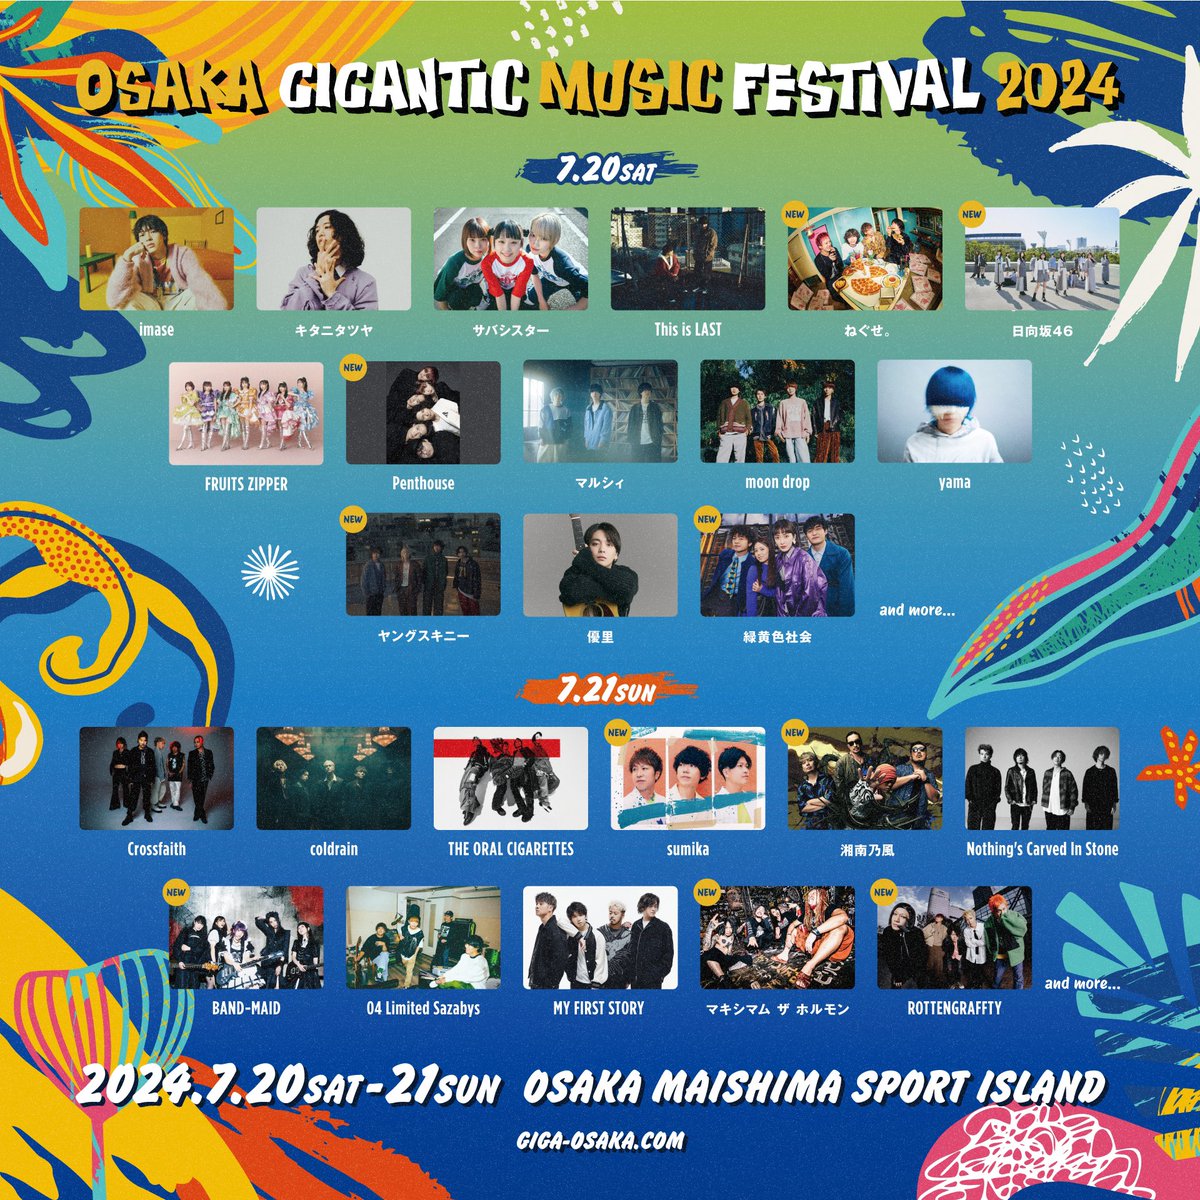 【ライブ情報】 OSAKA GIGANTIC MUSIC FESTIVAL 2024 2024年7月20日(土)・21日(日) 舞洲スポーツアイランド特設会場 我々 #sumika の出演日は、 7月21日(日)に決定しました！ 詳細↓ giga-osaka.com よろしくお願いします◎ #ジャイガ